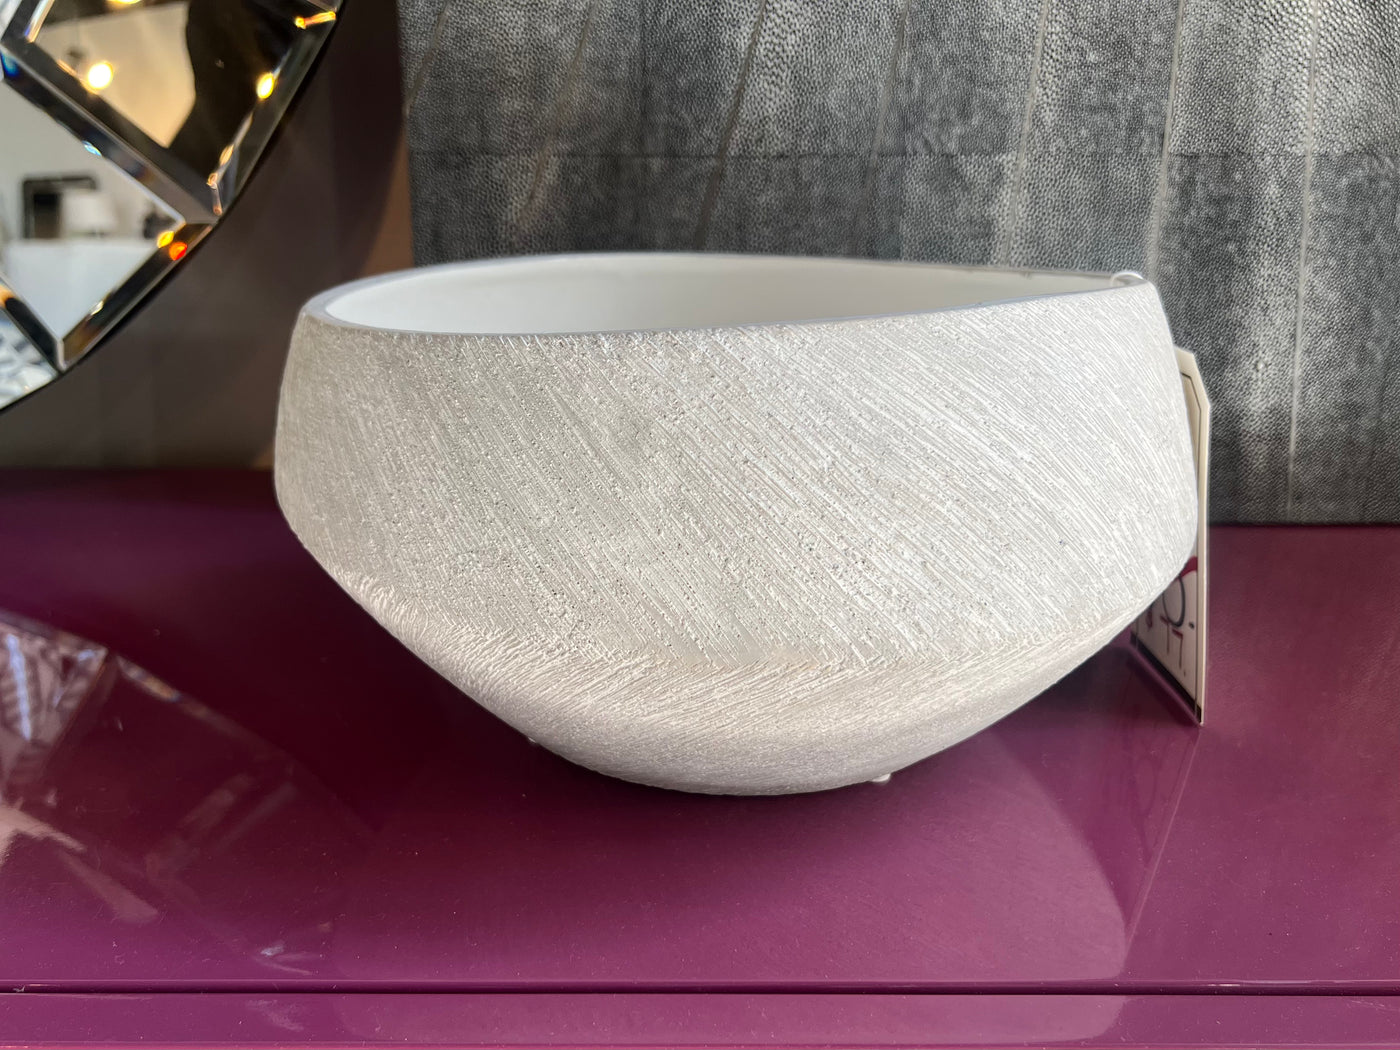 Cyan Designs Selena Basin Bowl in Natural Stone